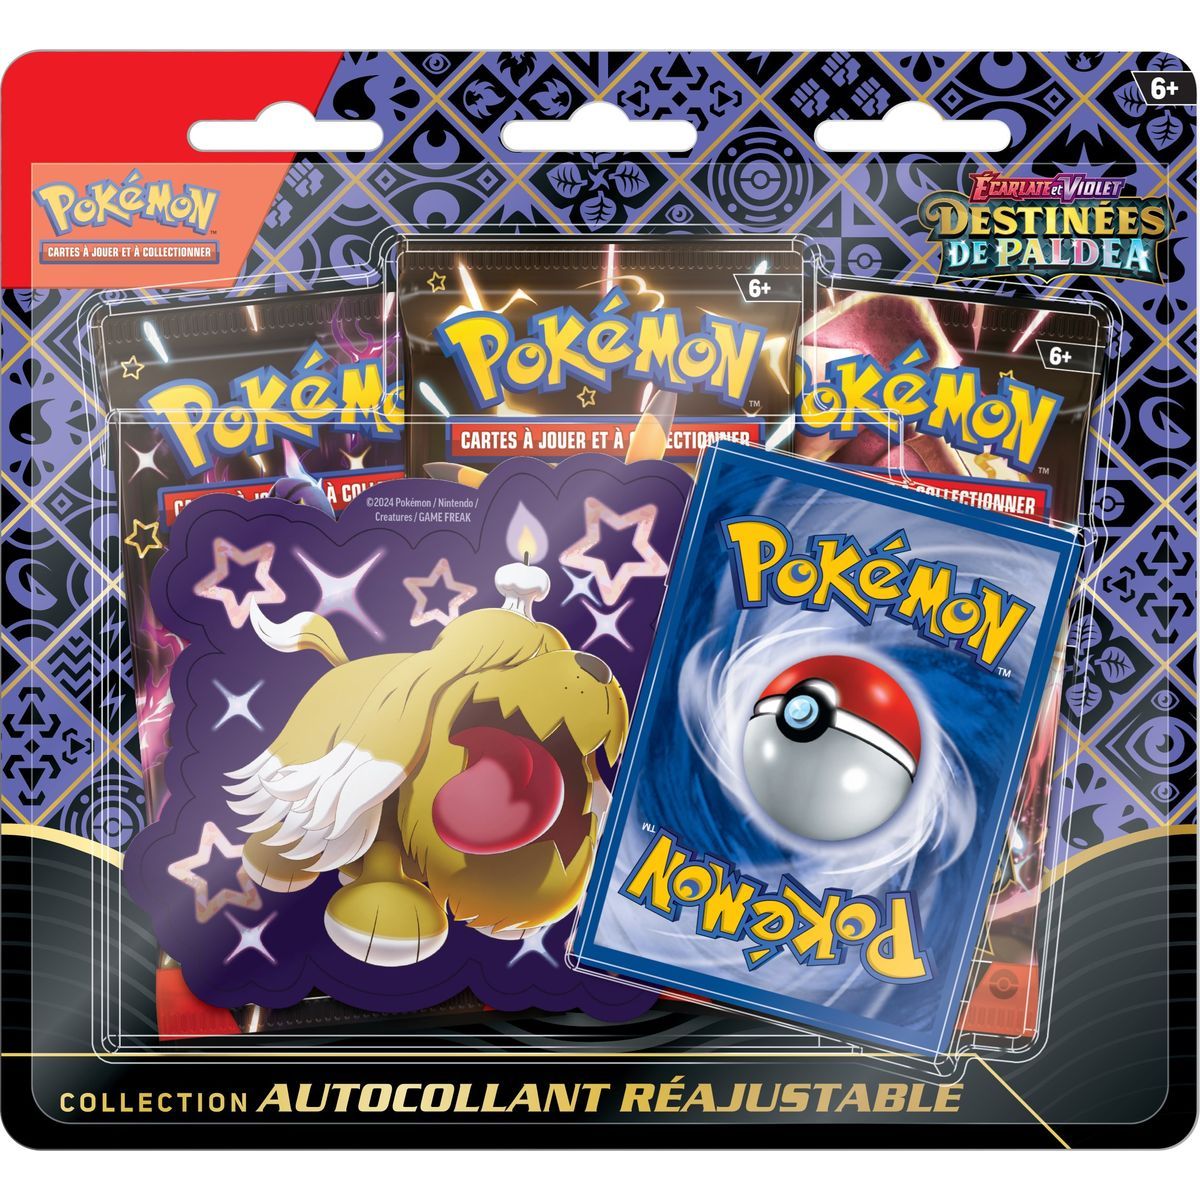 Pokémon - Coffret Collection Autocollant réajustable - Ecarlate et Violet - Destinées de Paldea Toutombe -[SV04.5 - EV04.5] - FR